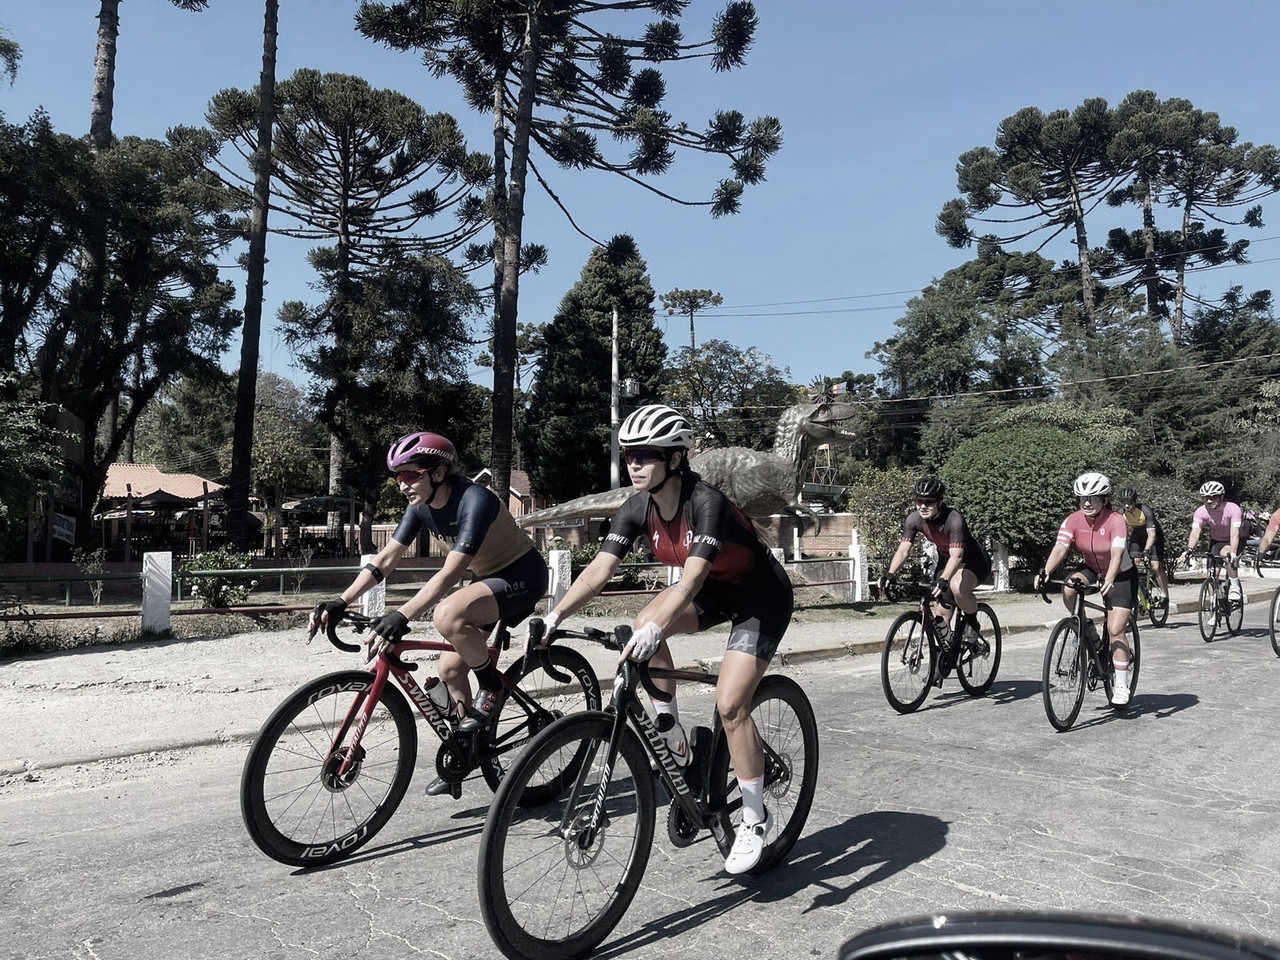 Maior prova do ciclismo amador no país, L'Étape Campos do Jordão terá 3600 atletas neste fim de semana